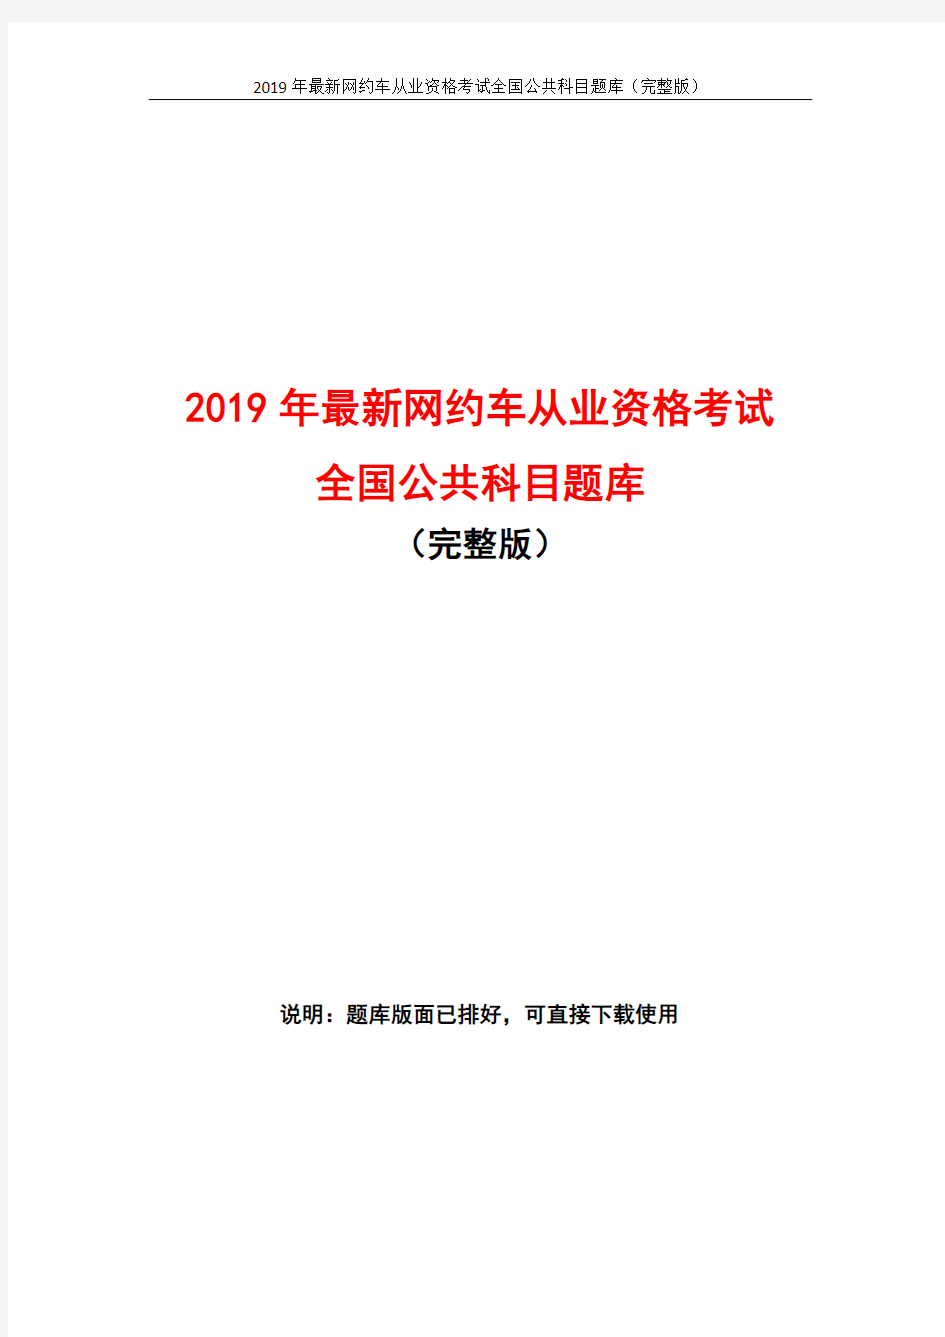 2019年最新网约车从业资格考试全国公共科目题库(完整版)